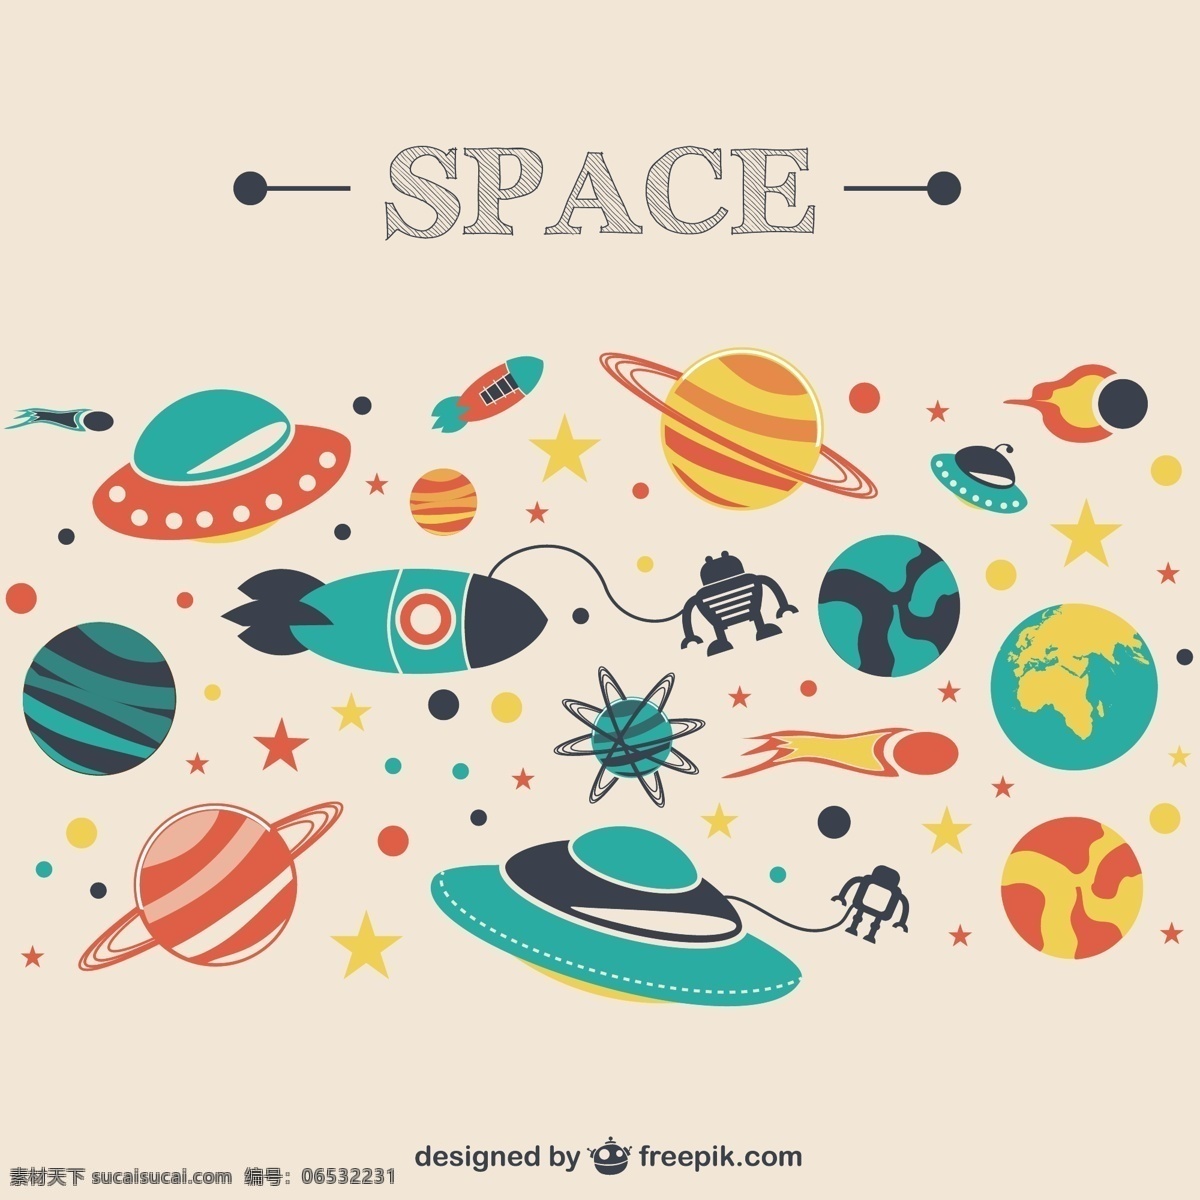 太空行星集合 背景 学校 书 图标 模板 科学 壁纸 图形 空间 布局 船舶 平面设计 研究行星 象形文字 学习 白色